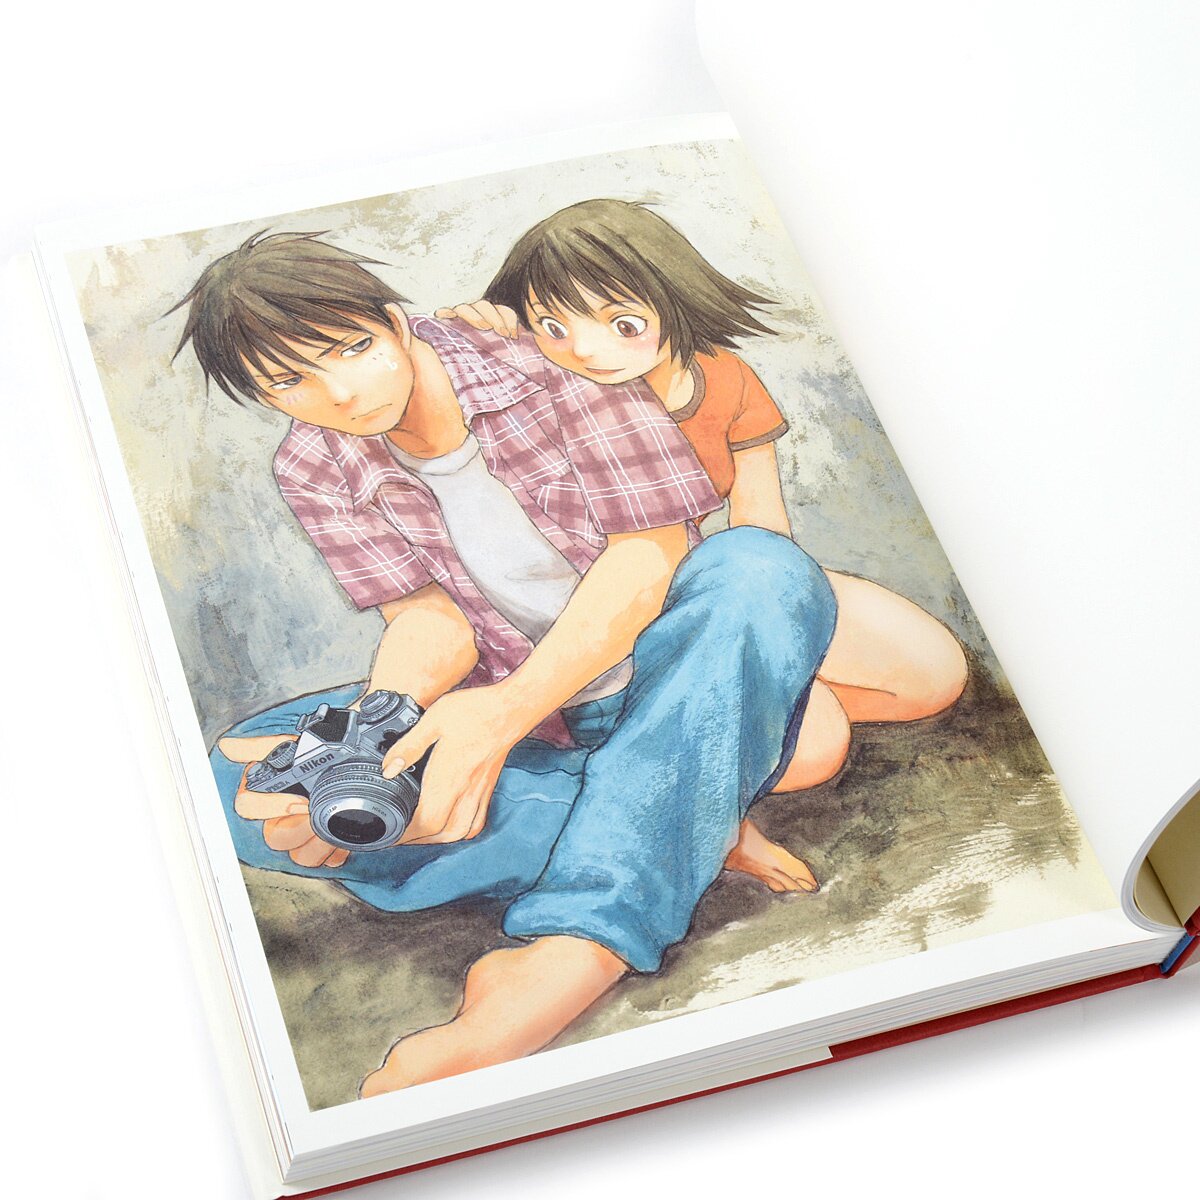 Sing Yesterday afterword comic manga anime Kei Toume wo utatte Japanese Book